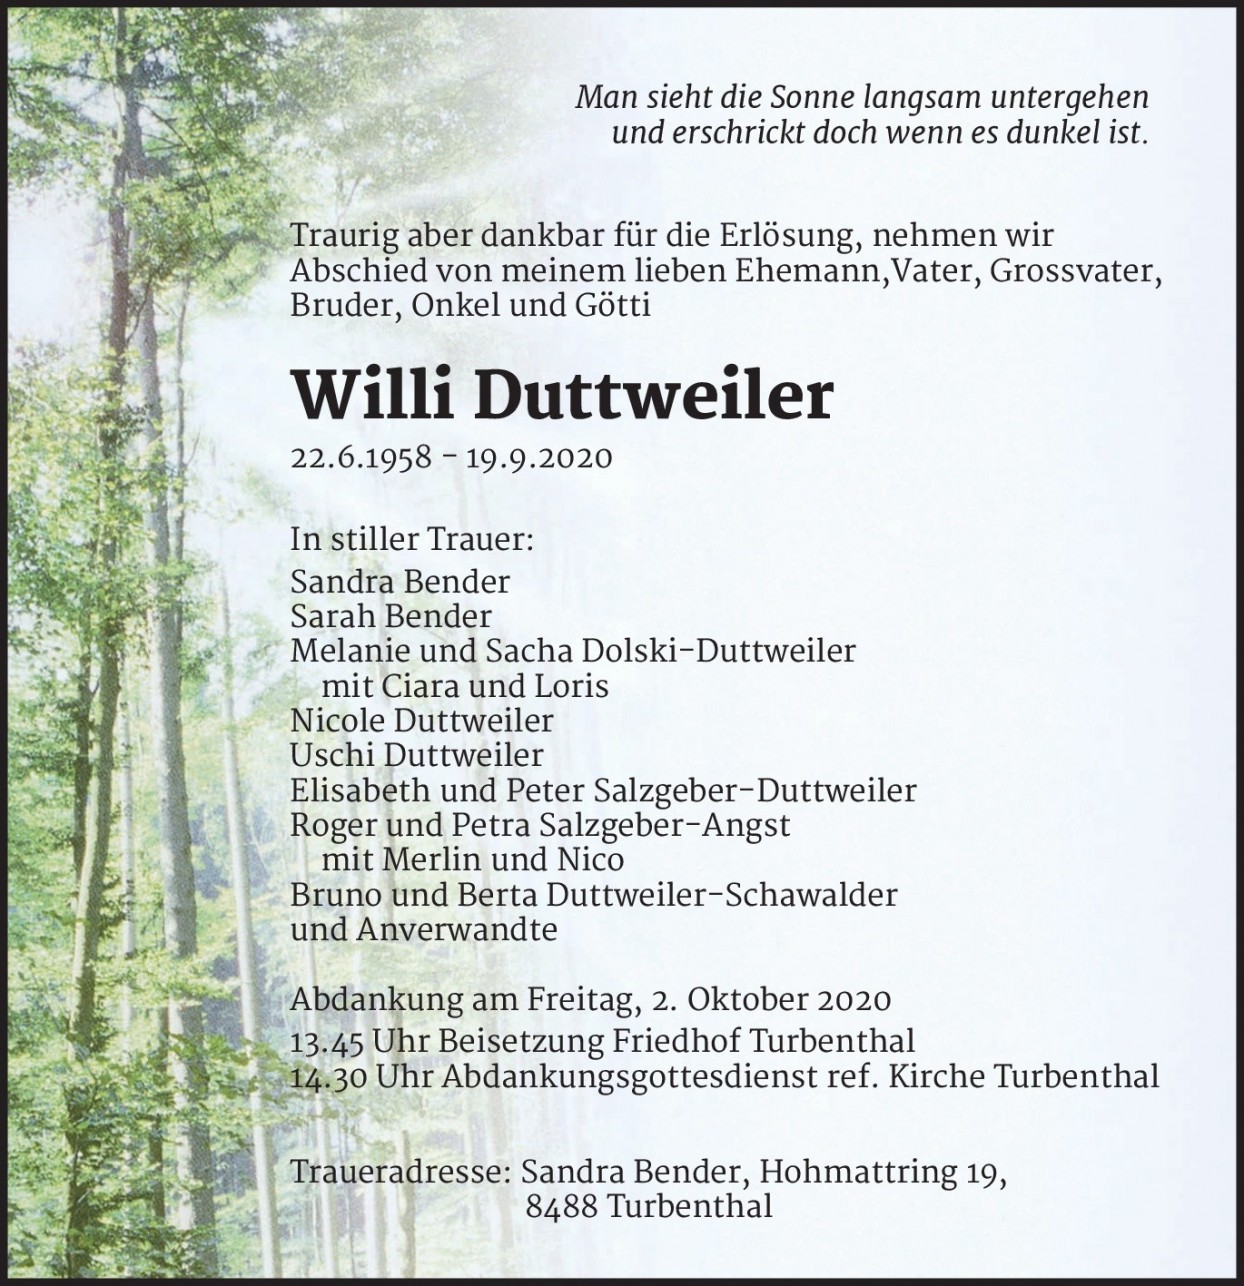 Willi Duttweiler